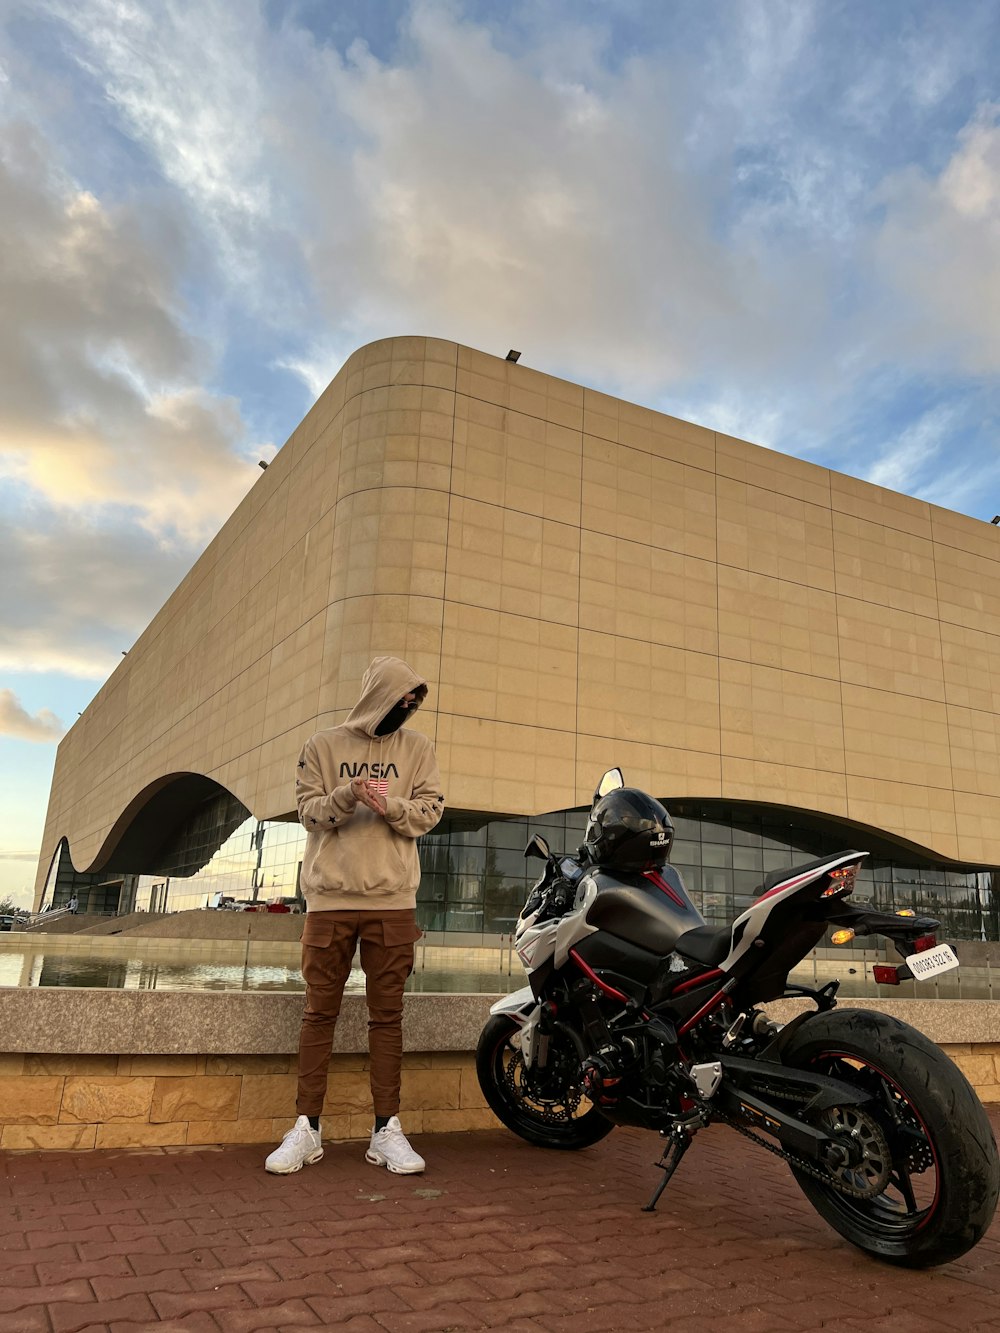 Un homme debout à côté d’une moto devant un immeuble